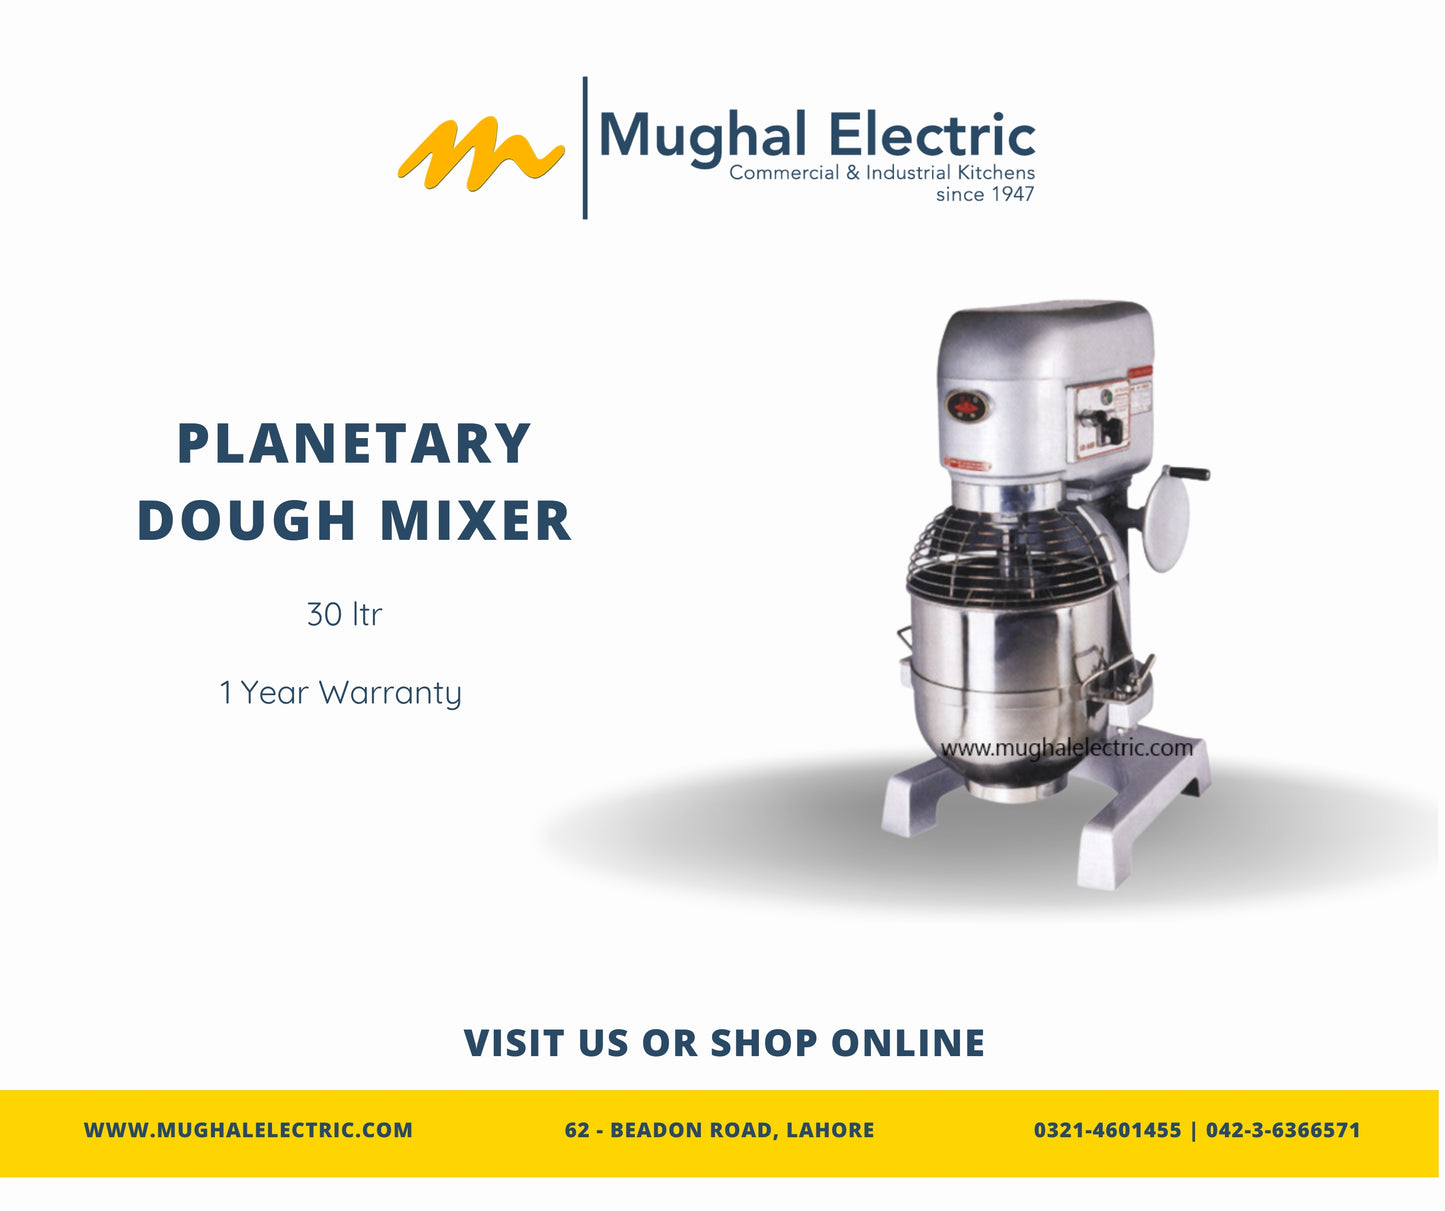 Planetary Dough Mixer